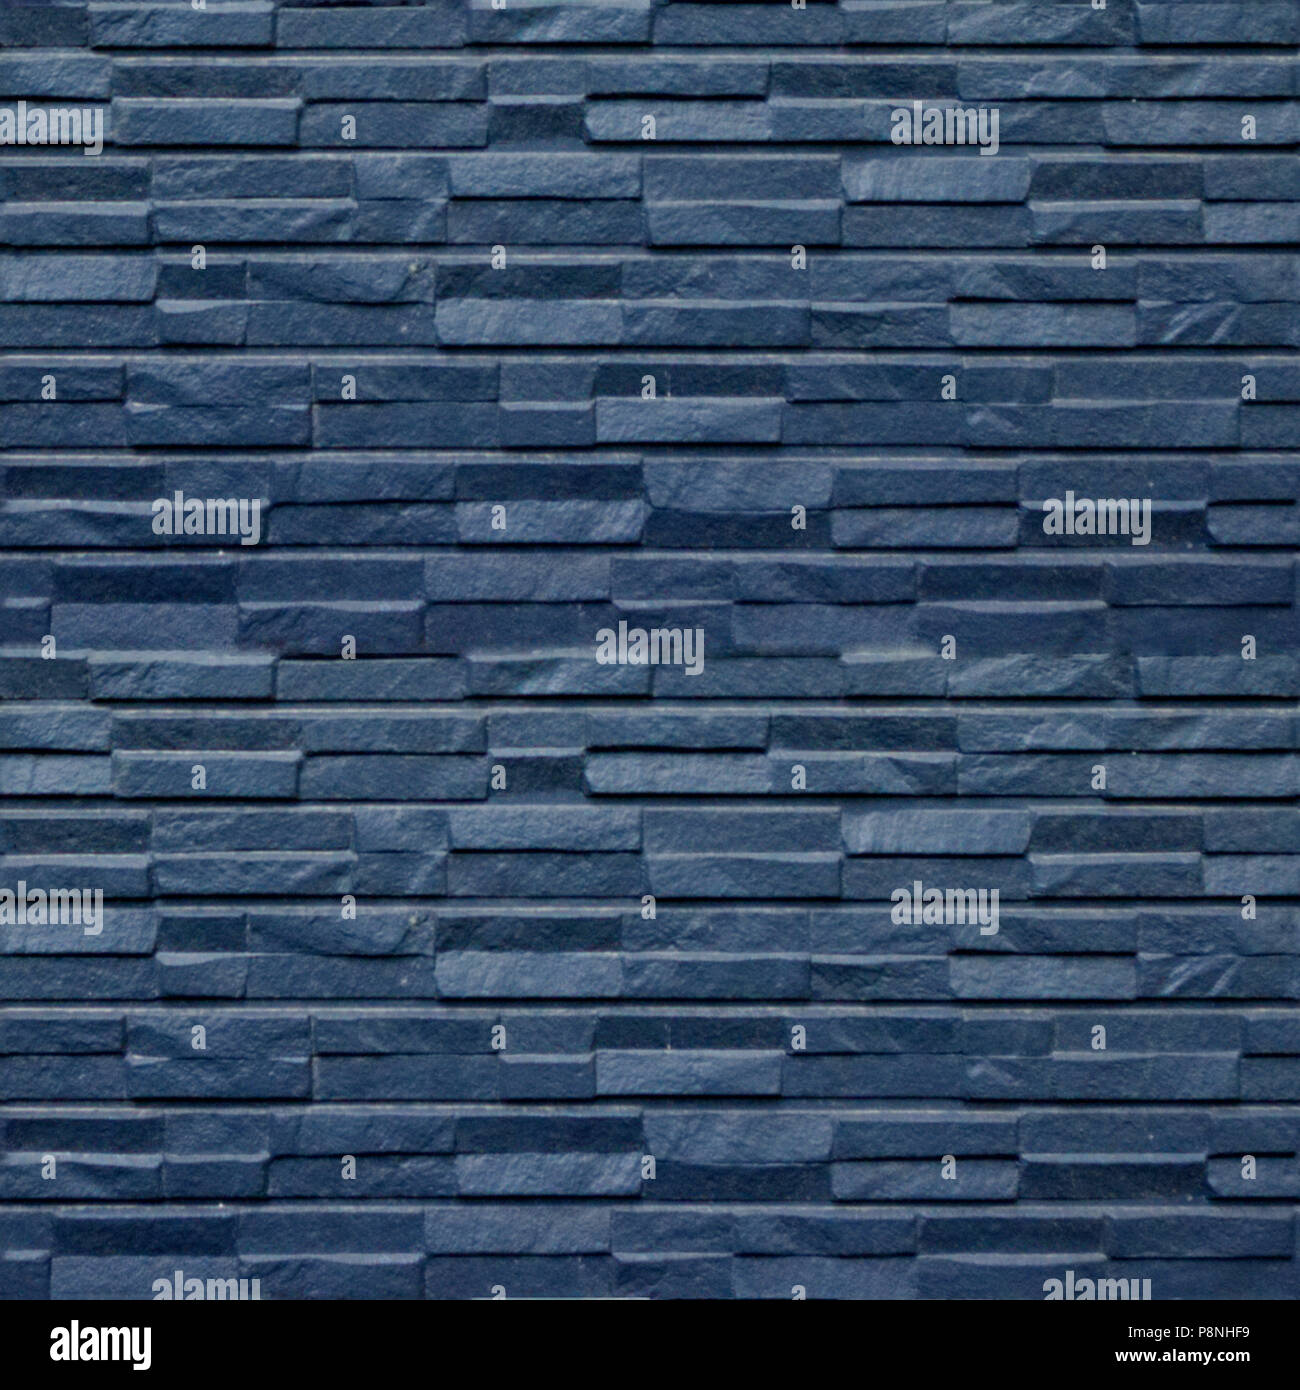 Nahtlose Muster mit Blue Stone Wall panels der ursprünglichen Quadrat form  Stockfotografie - Alamy